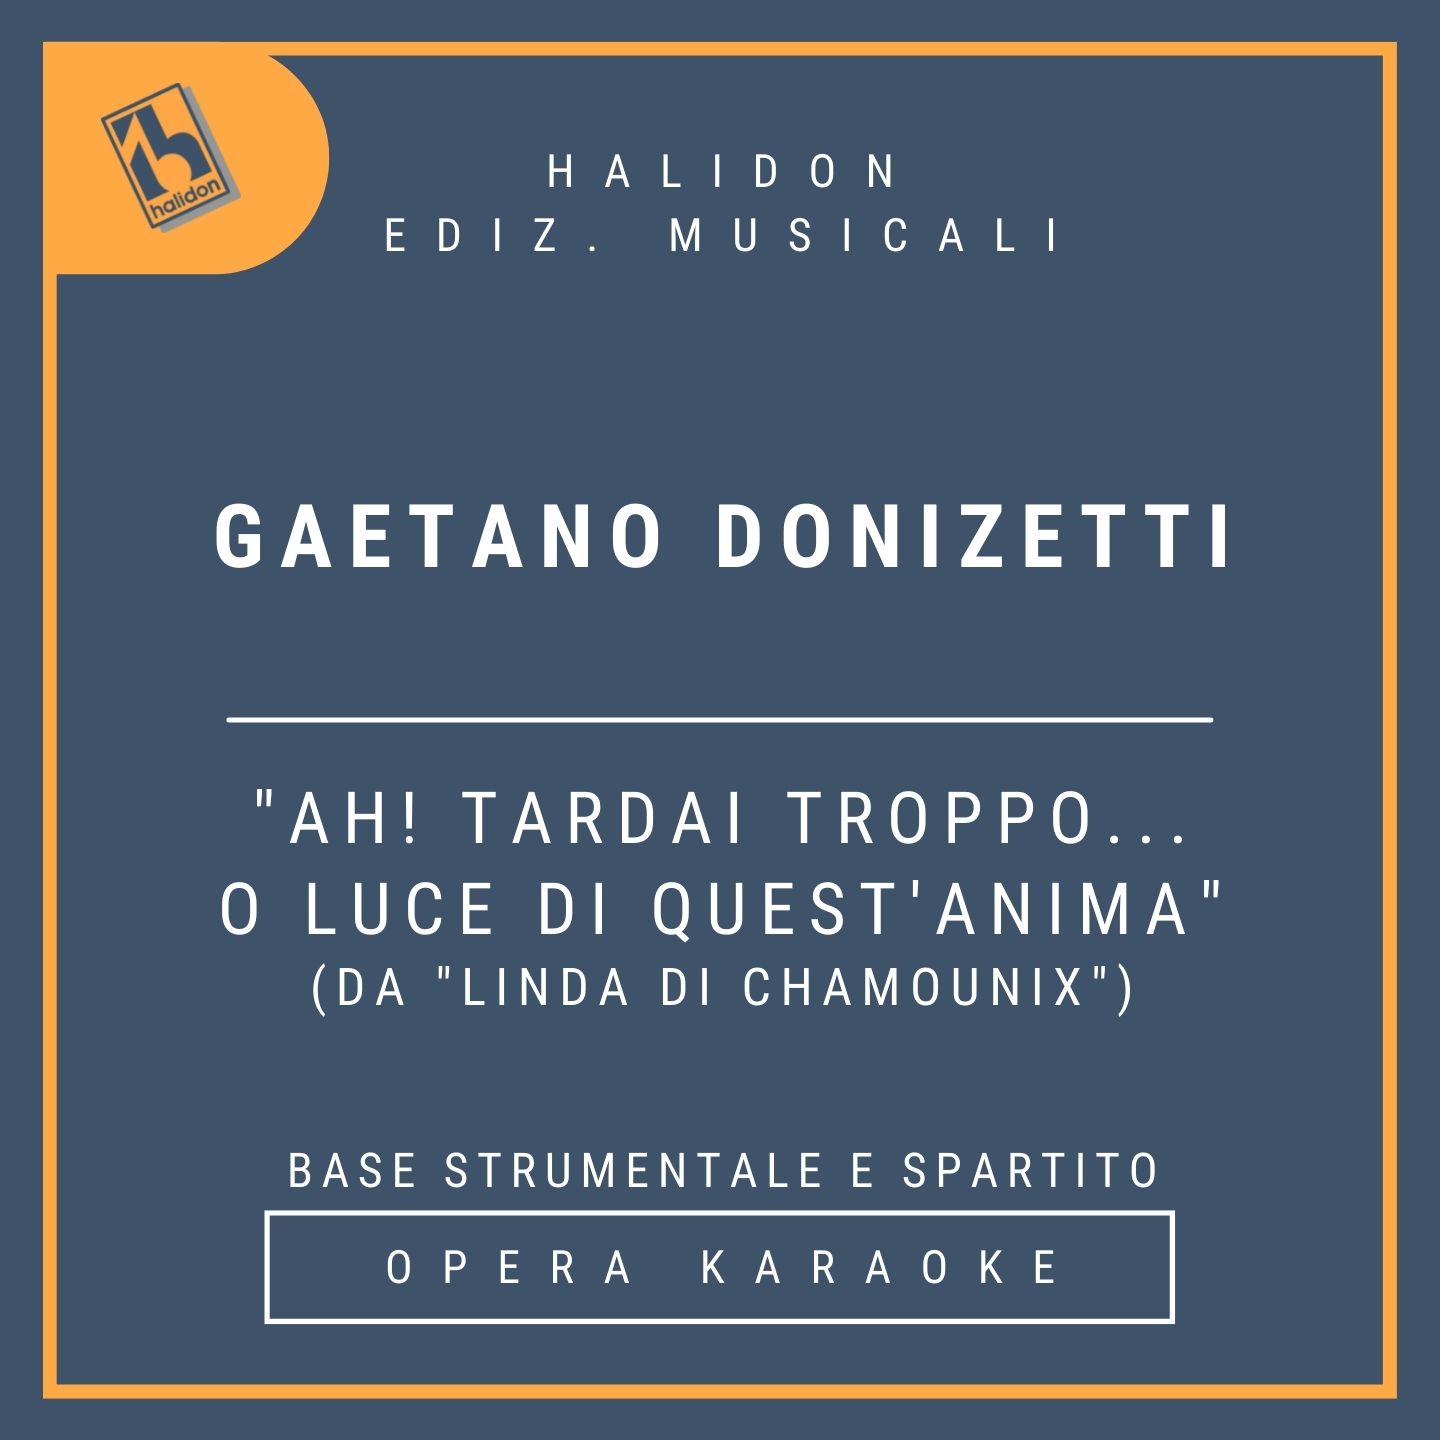 Gaetano Donizetti - Ah! tardai troppo... O Luce di quest'anima (from 'Linda di Chamounix') - Linda's Recitativo and Cavatina (coloratura soprano) - Instrumental track + sheet